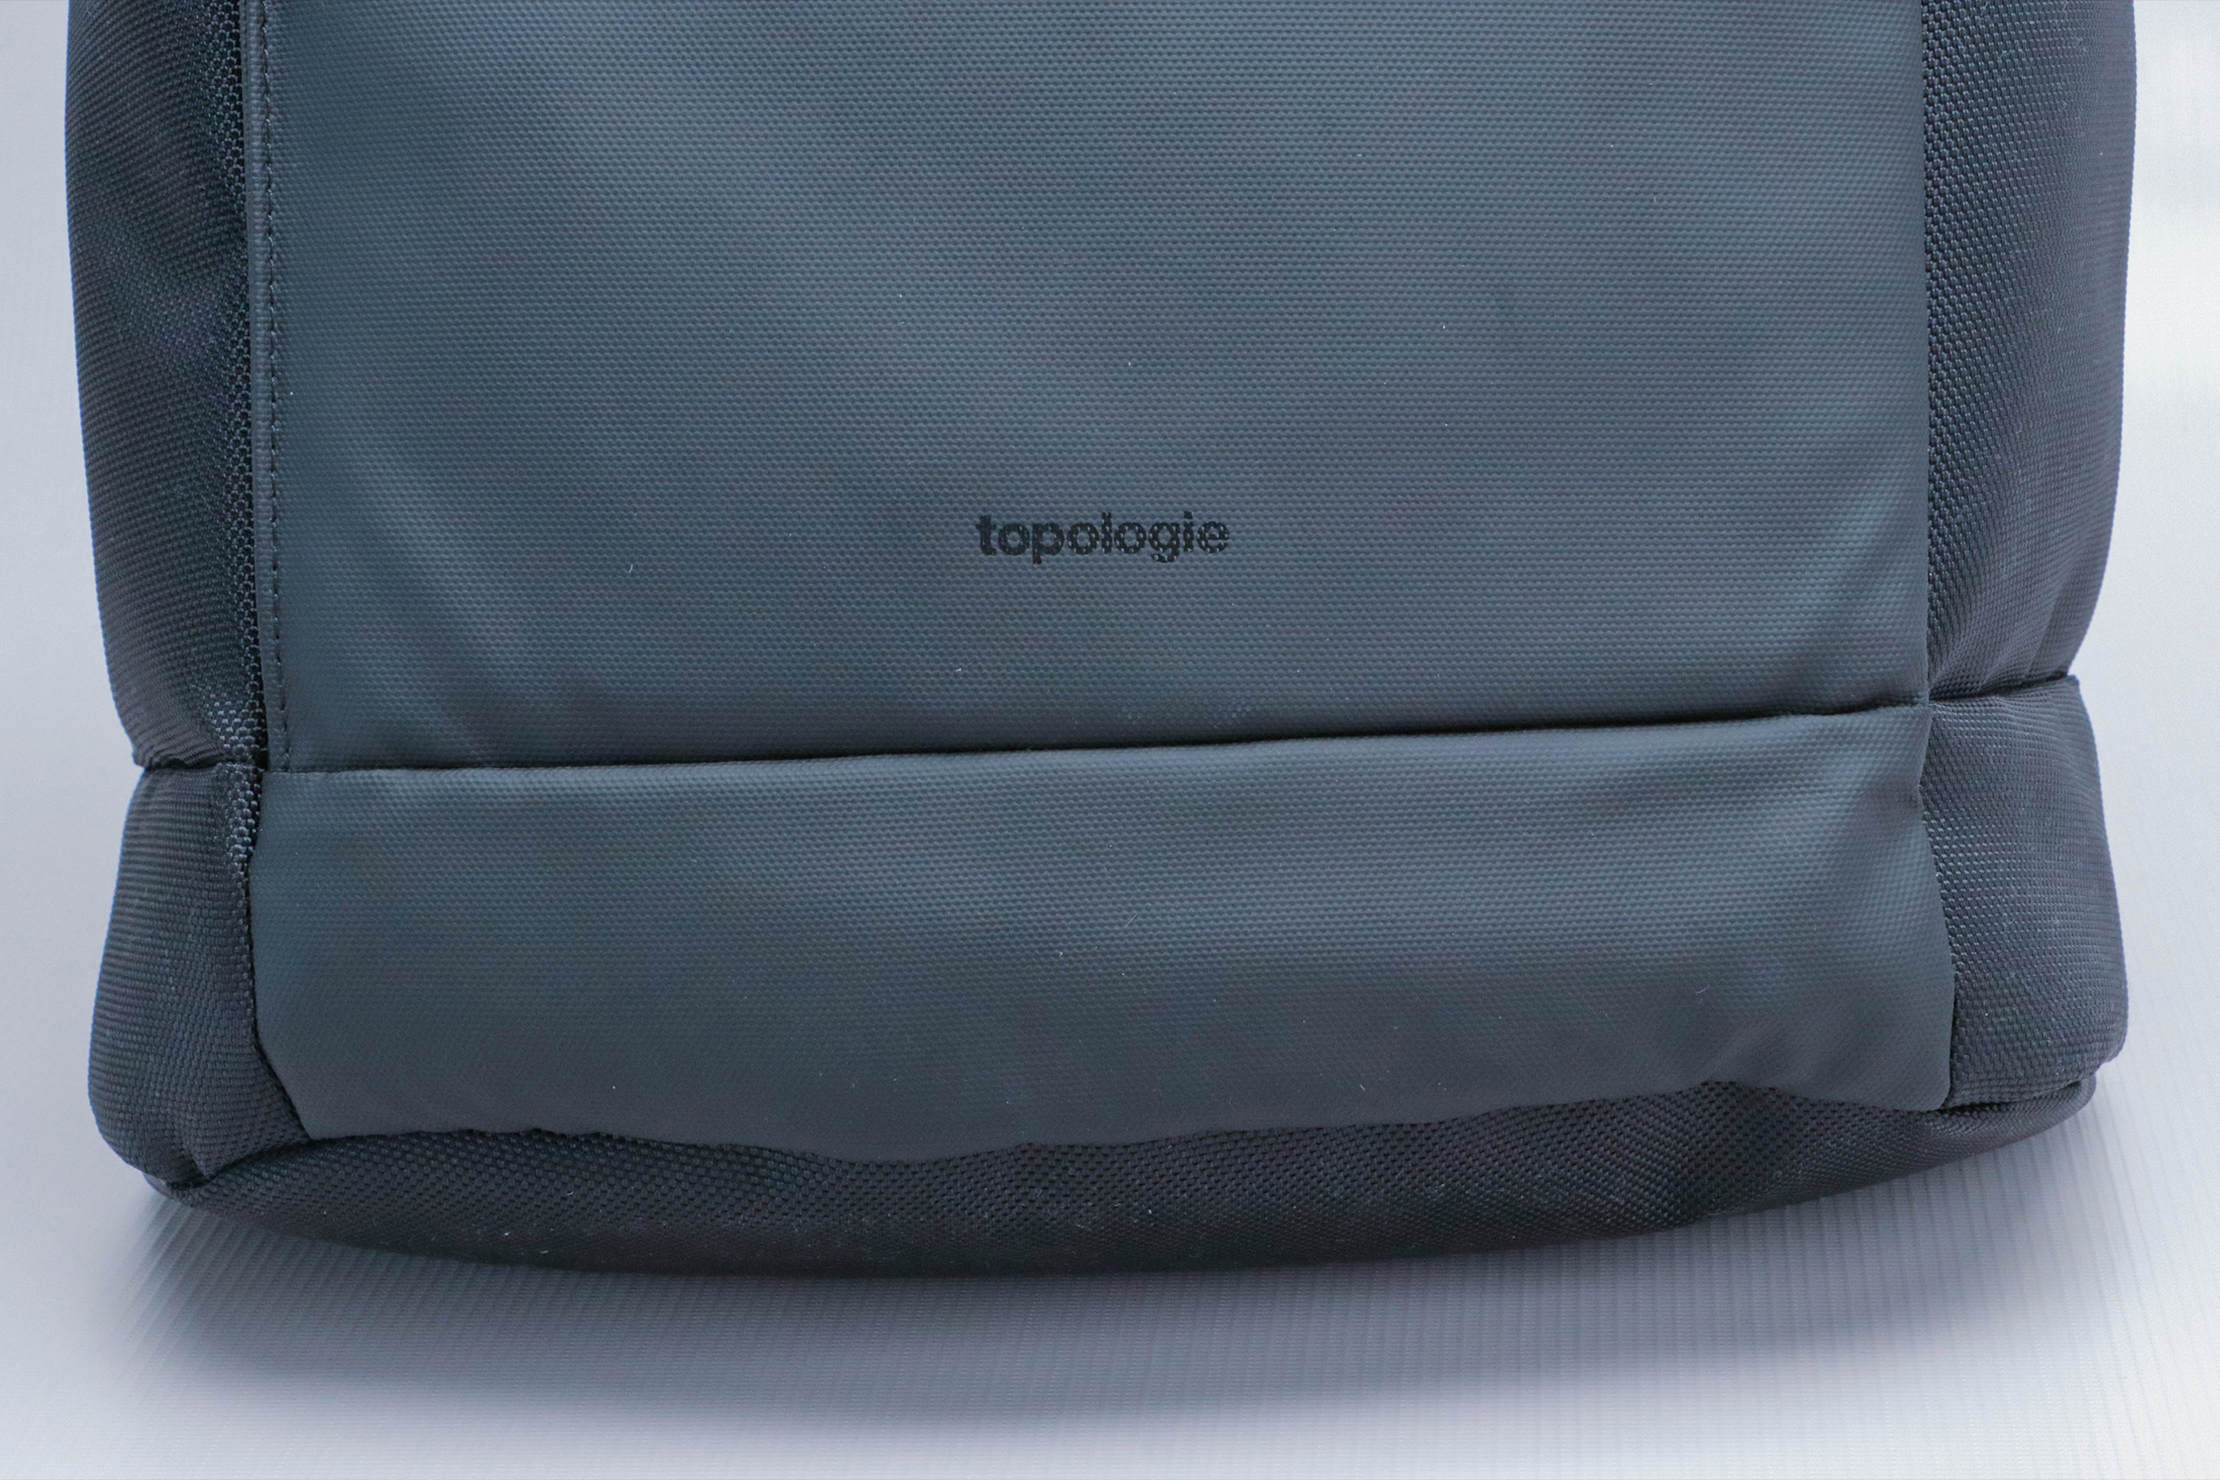 Topologie Haul Backpack Dry brand logo